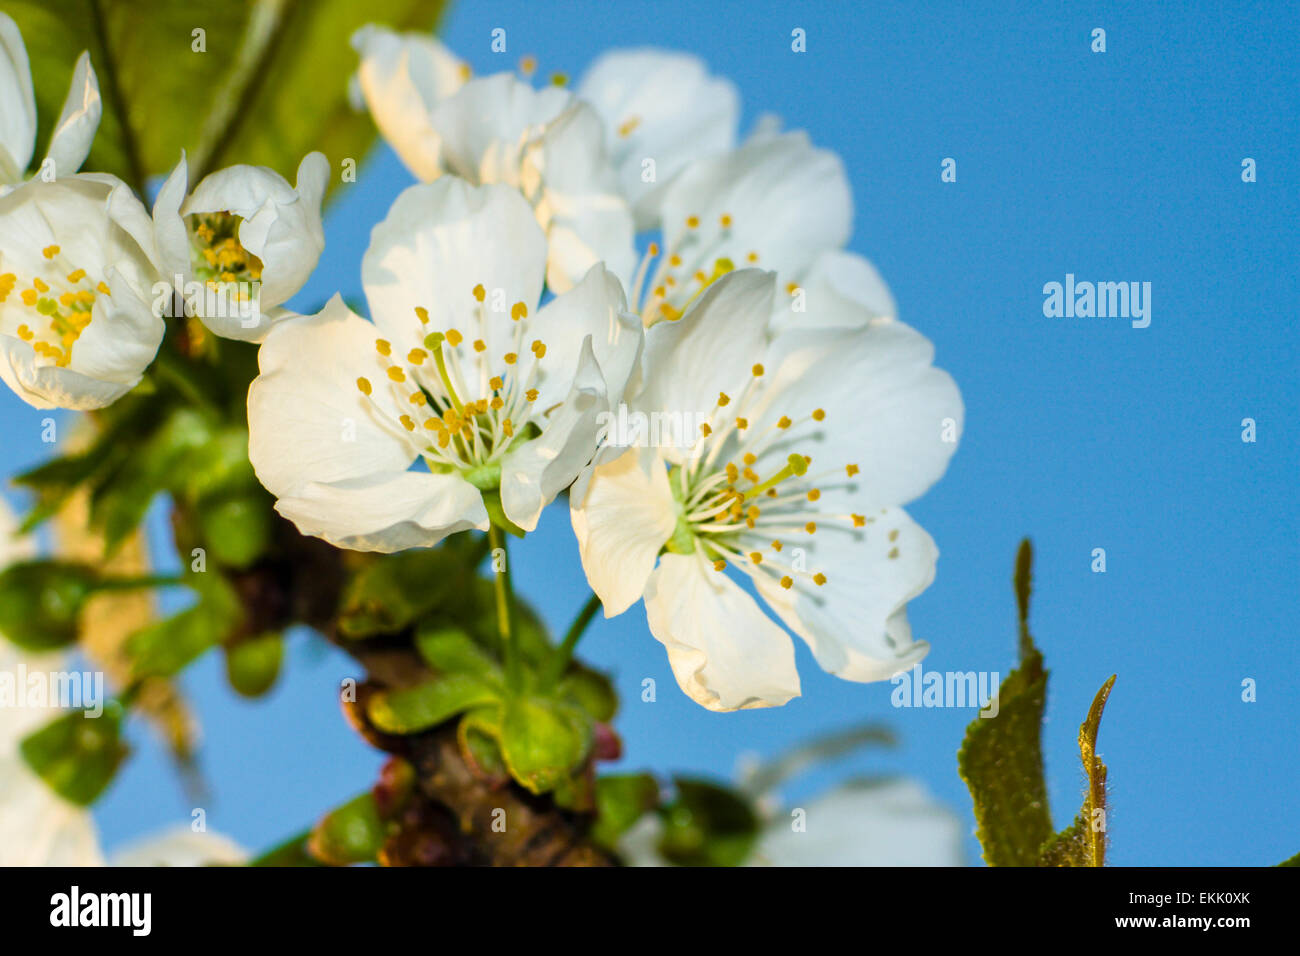 Higan Cherry or Autumn Cherry (Prunus subhirtella) blossoms Stock Photo